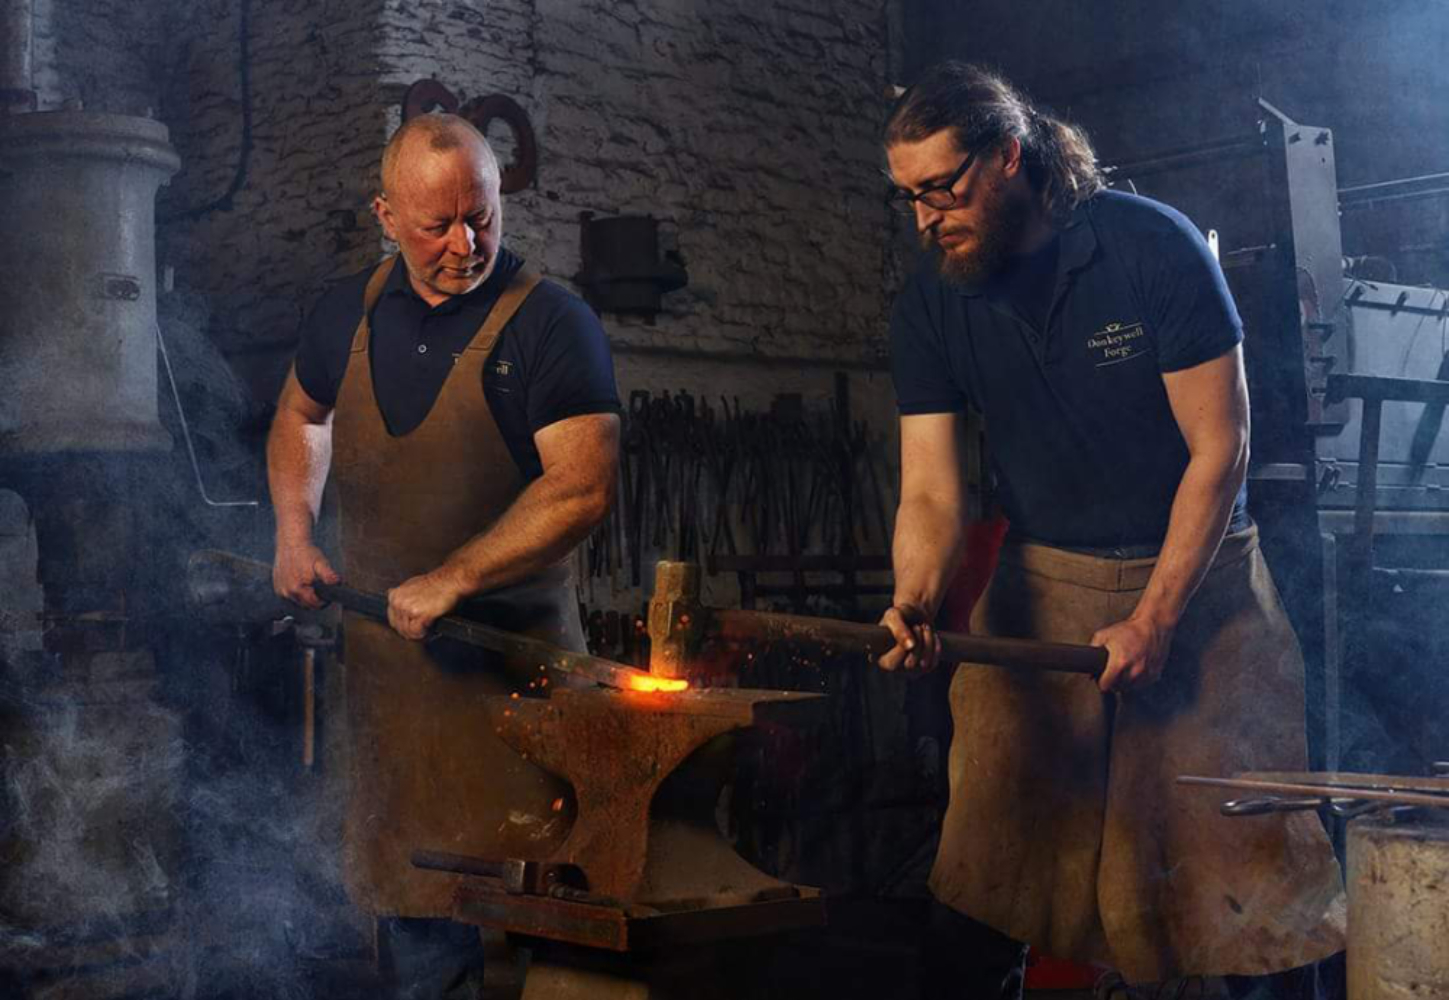 blacksmith-photography-forge-ironwork-donkeywell